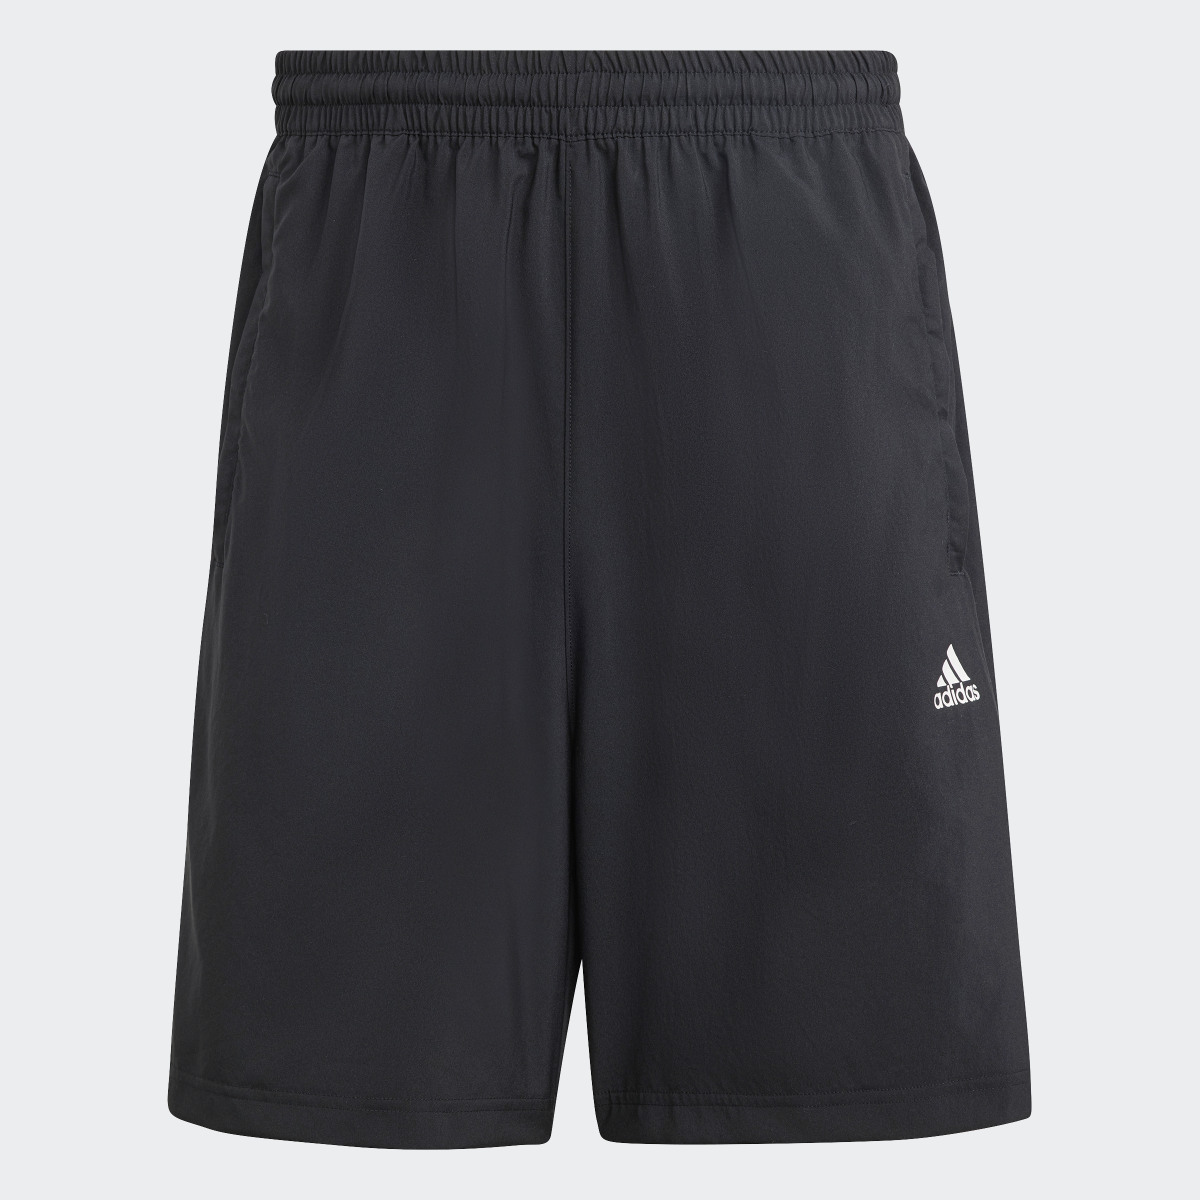 Adidas Shorts Scribble. 4